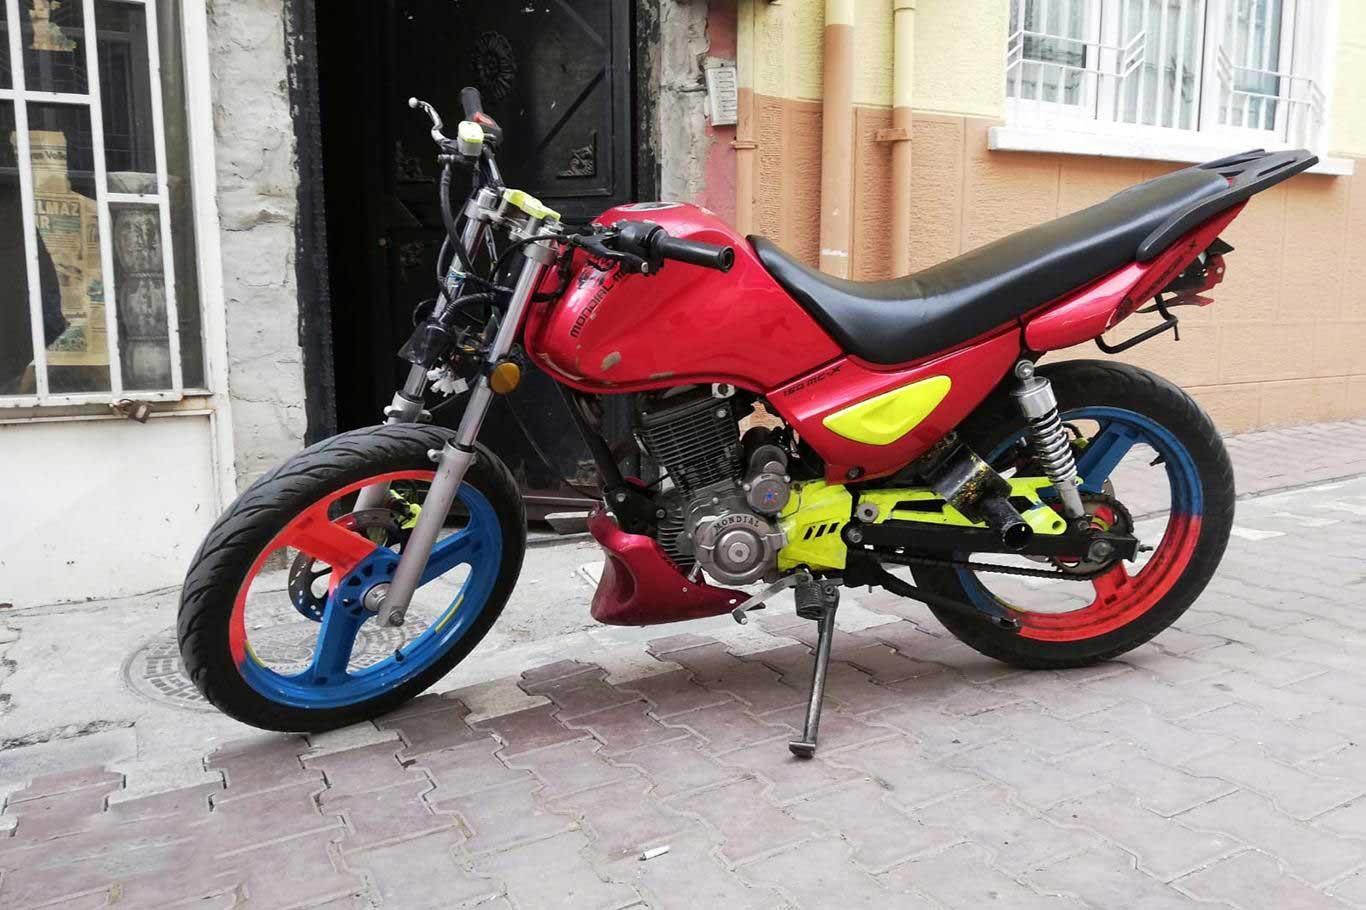 Elazığ'da motosiklet çalan 3 kişi yakalandı